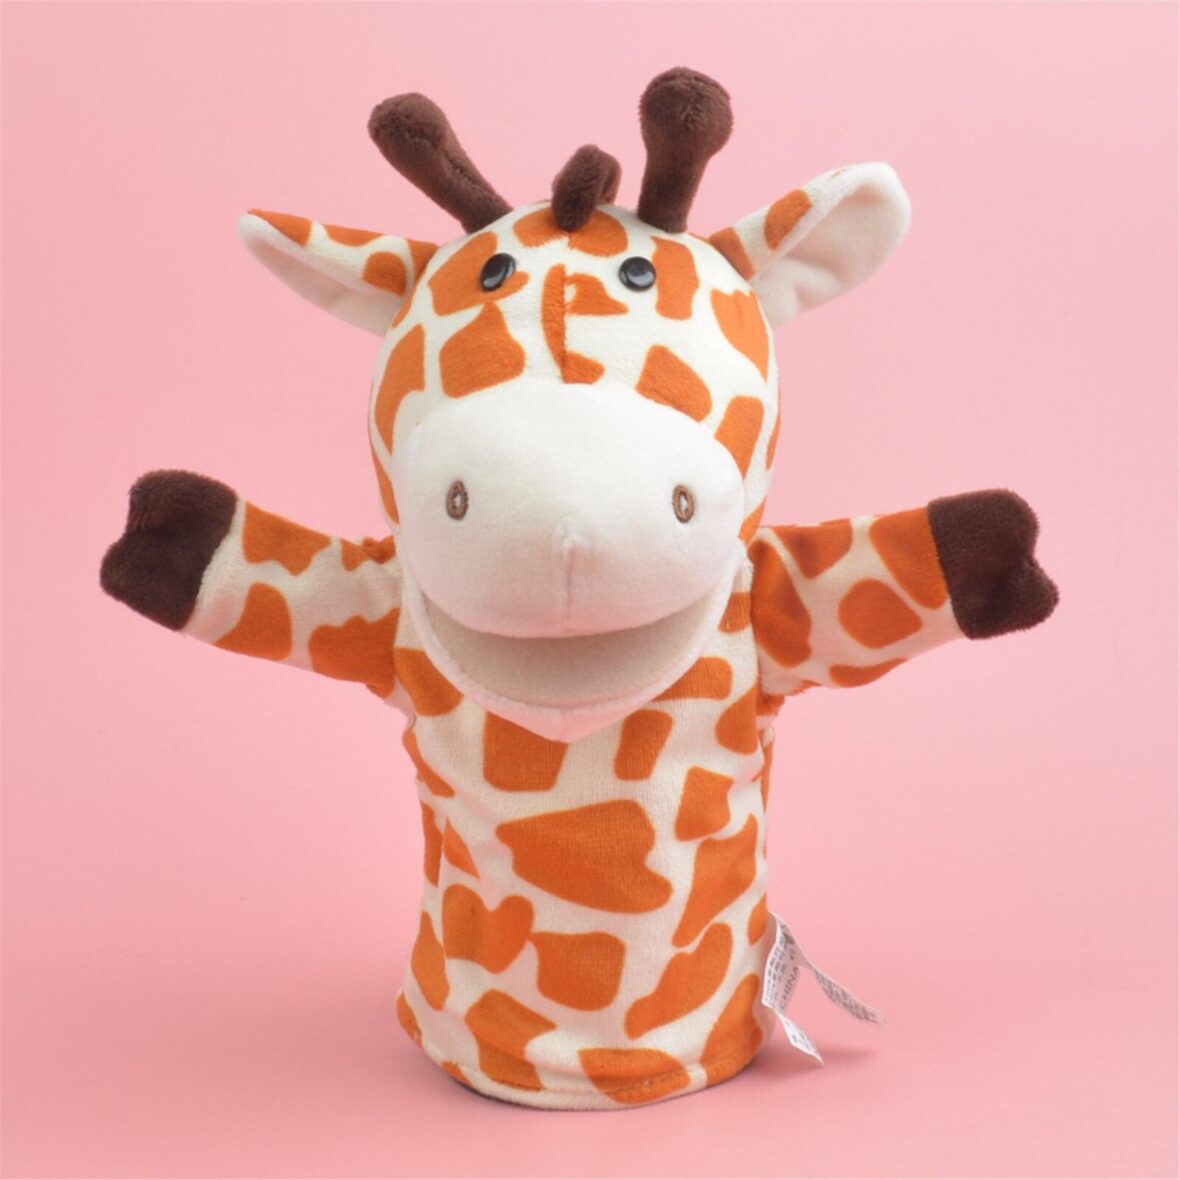 25cm Giraffe Soft Plush Stuffed Hand Puppet